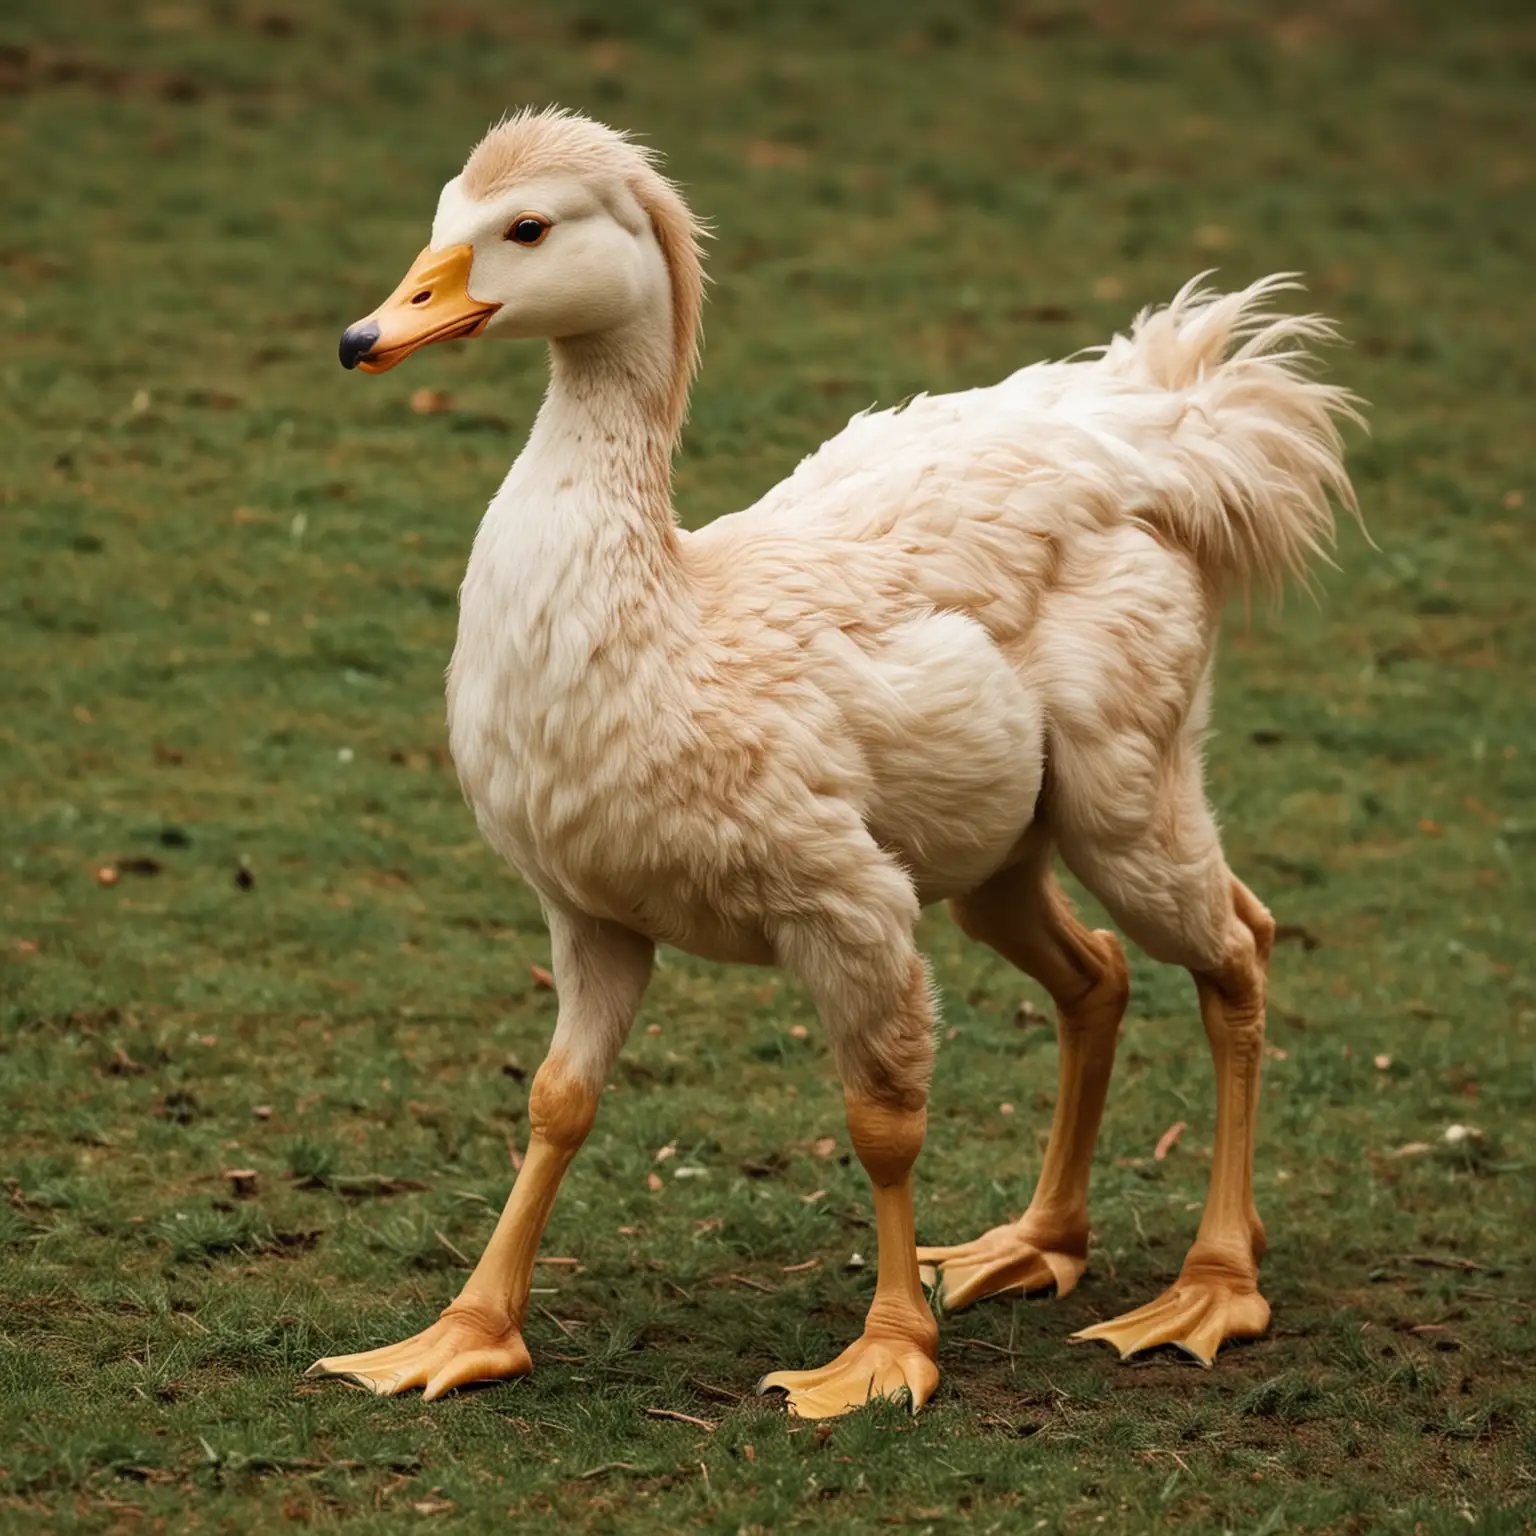 A centaur duck